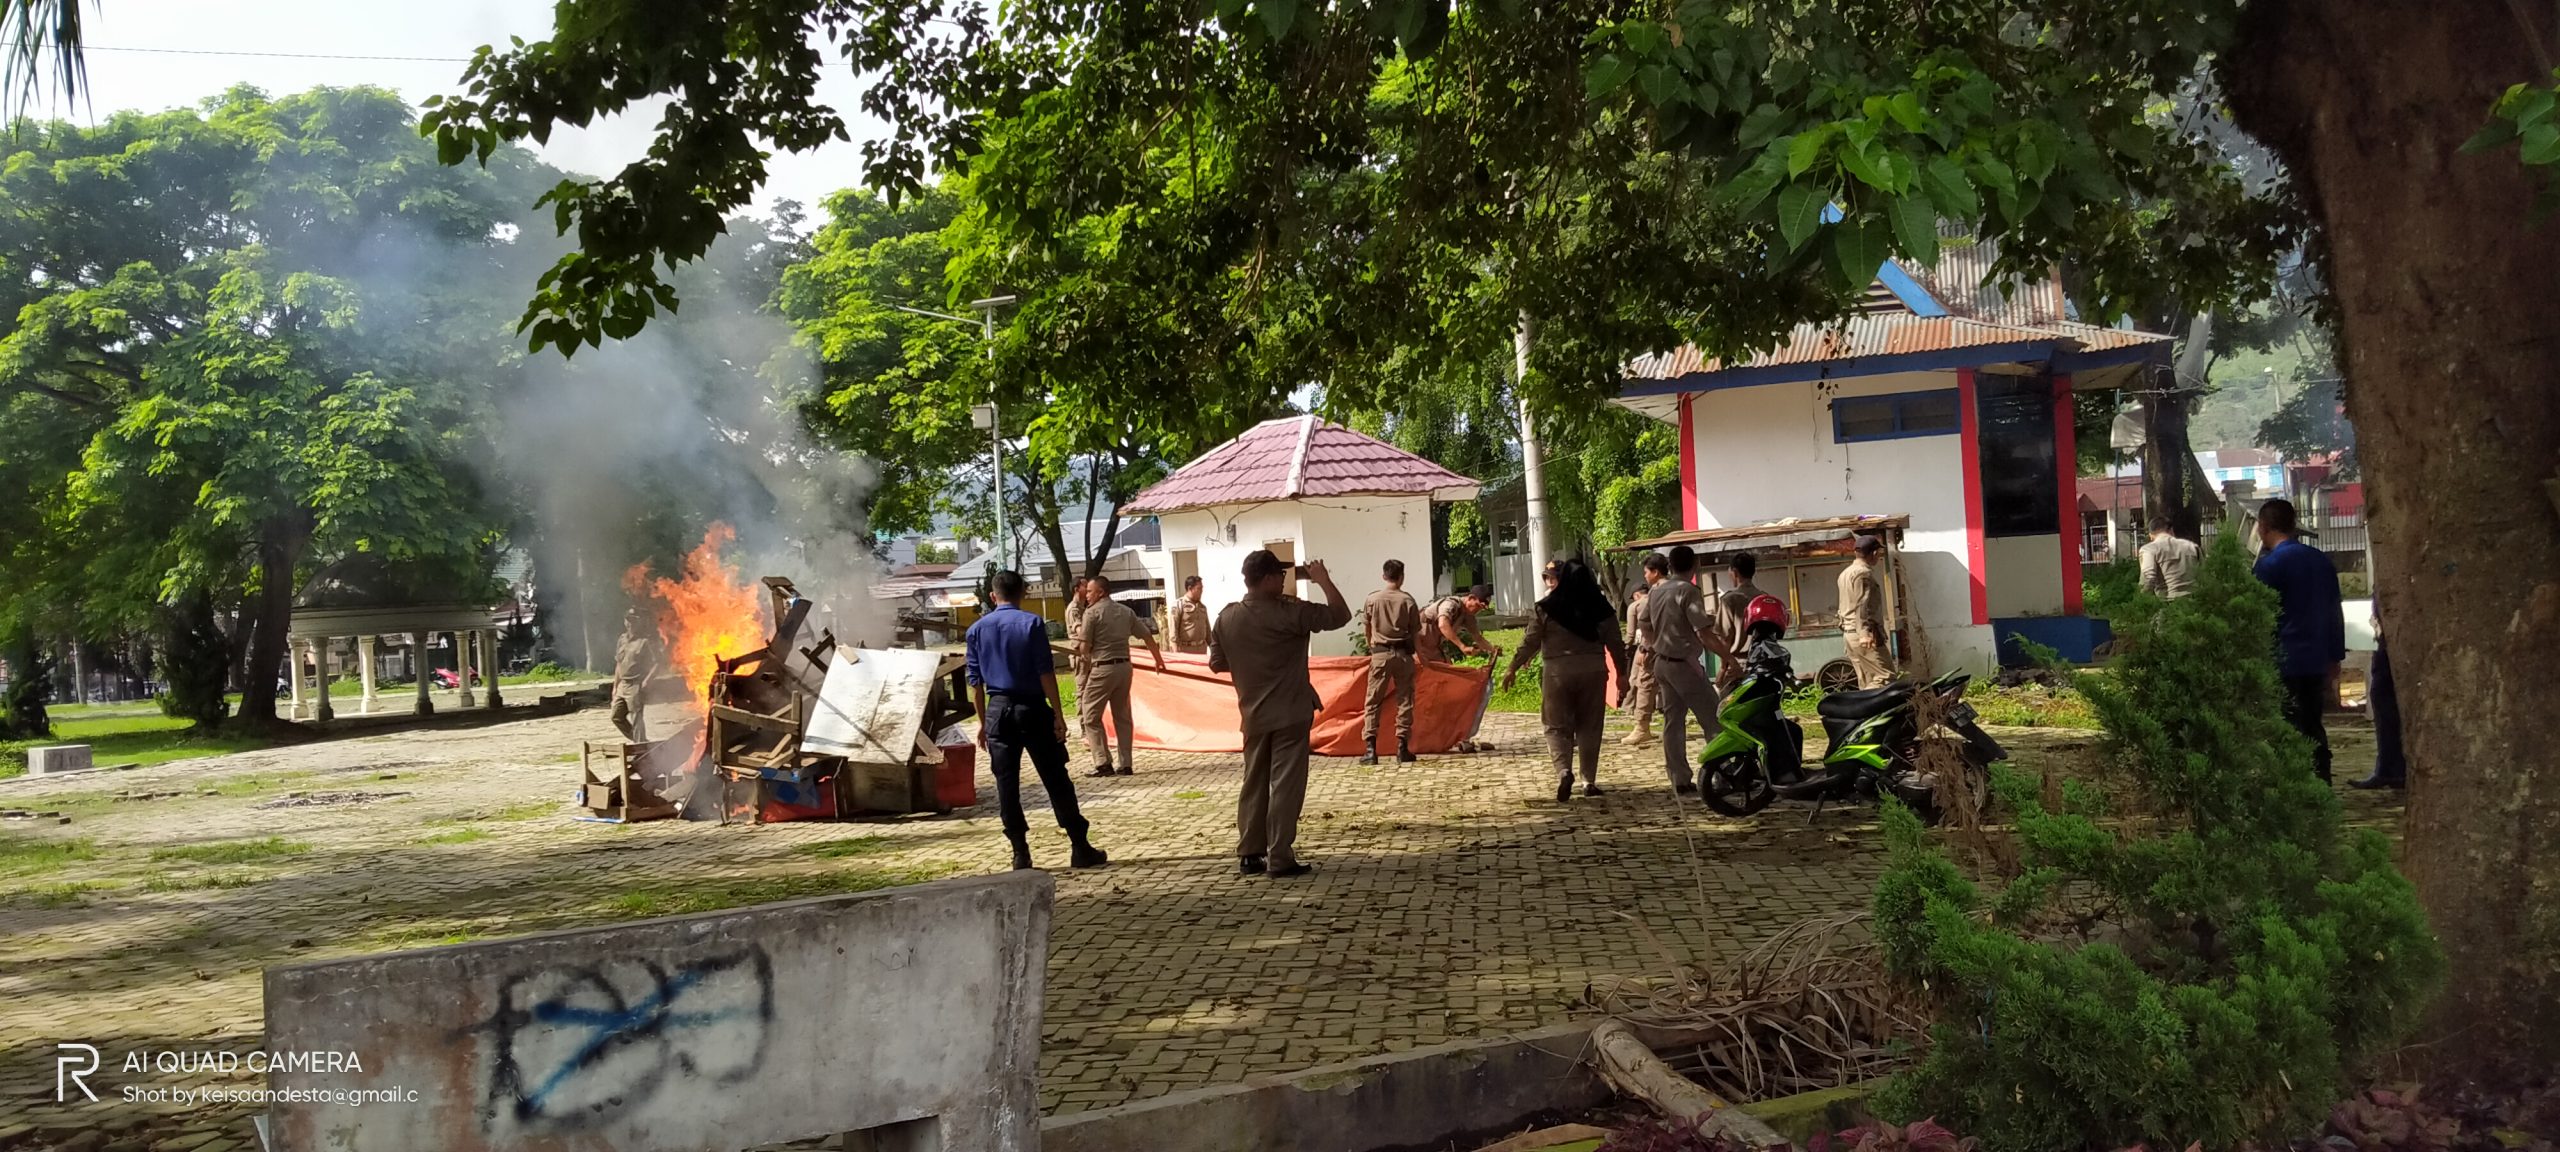 Sterilkan Taman Santoso, Satpol PP Bakar Gerobak Bekas Pedagang